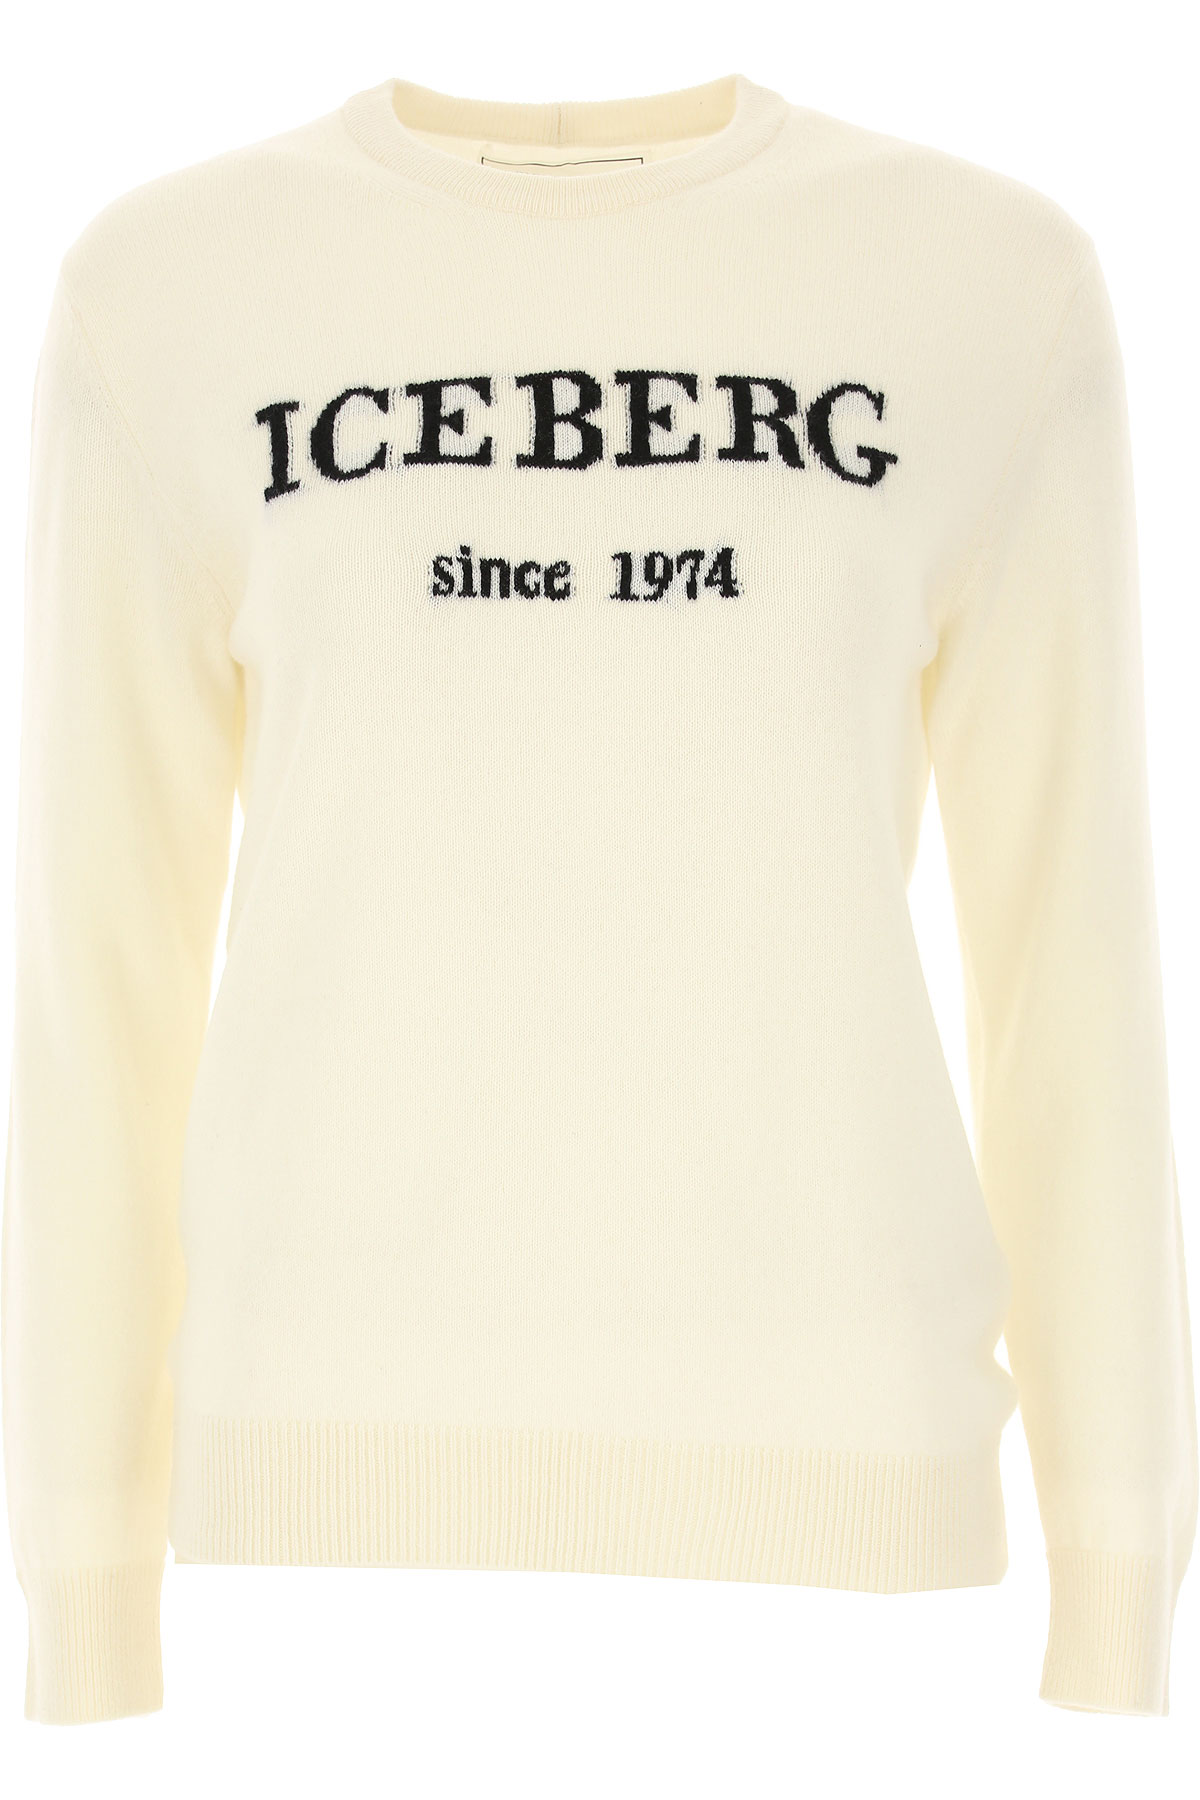 iceberg clothing summer 2019